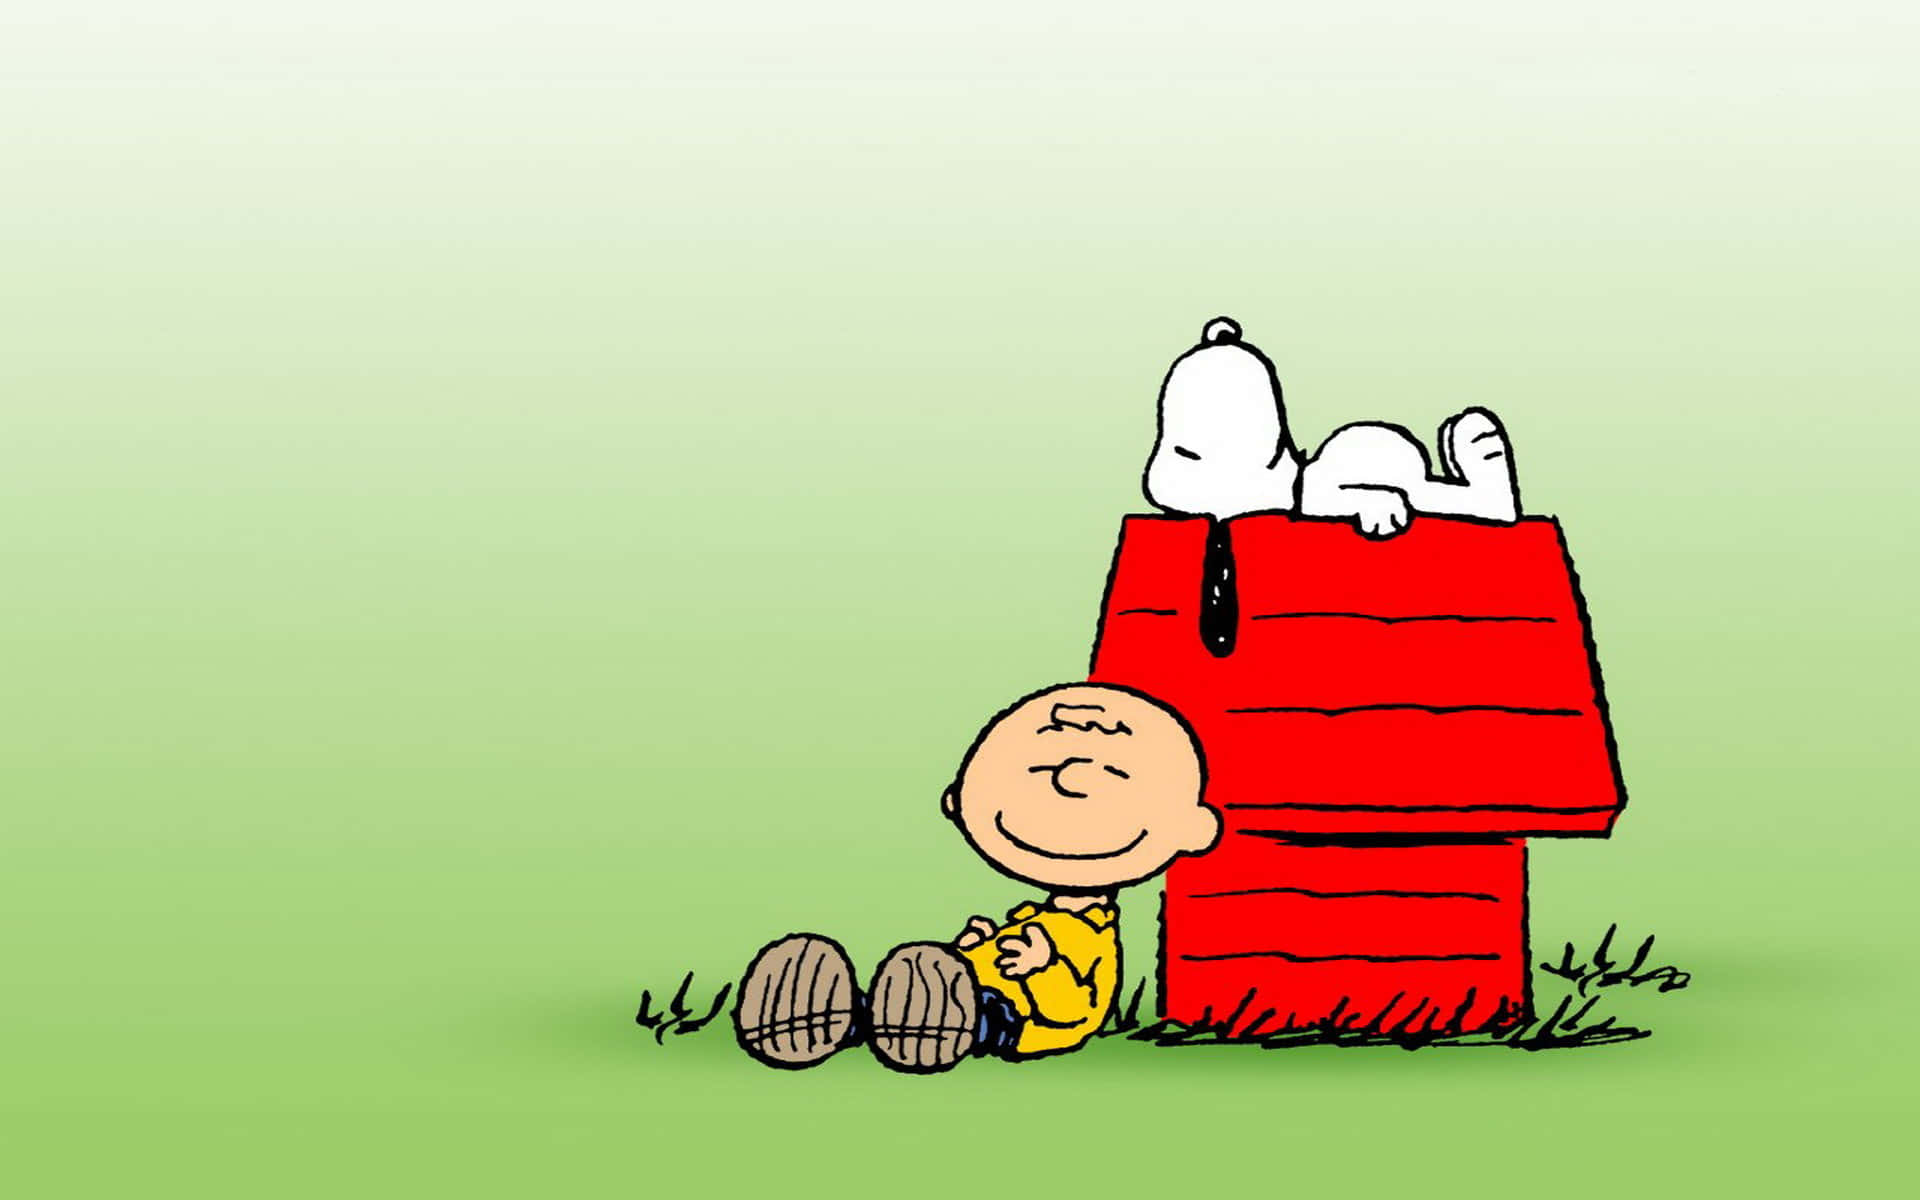 Esist Zeit Zum Feiern - Alles Gute Zum Geburtstag, Charlie Brown Wallpaper